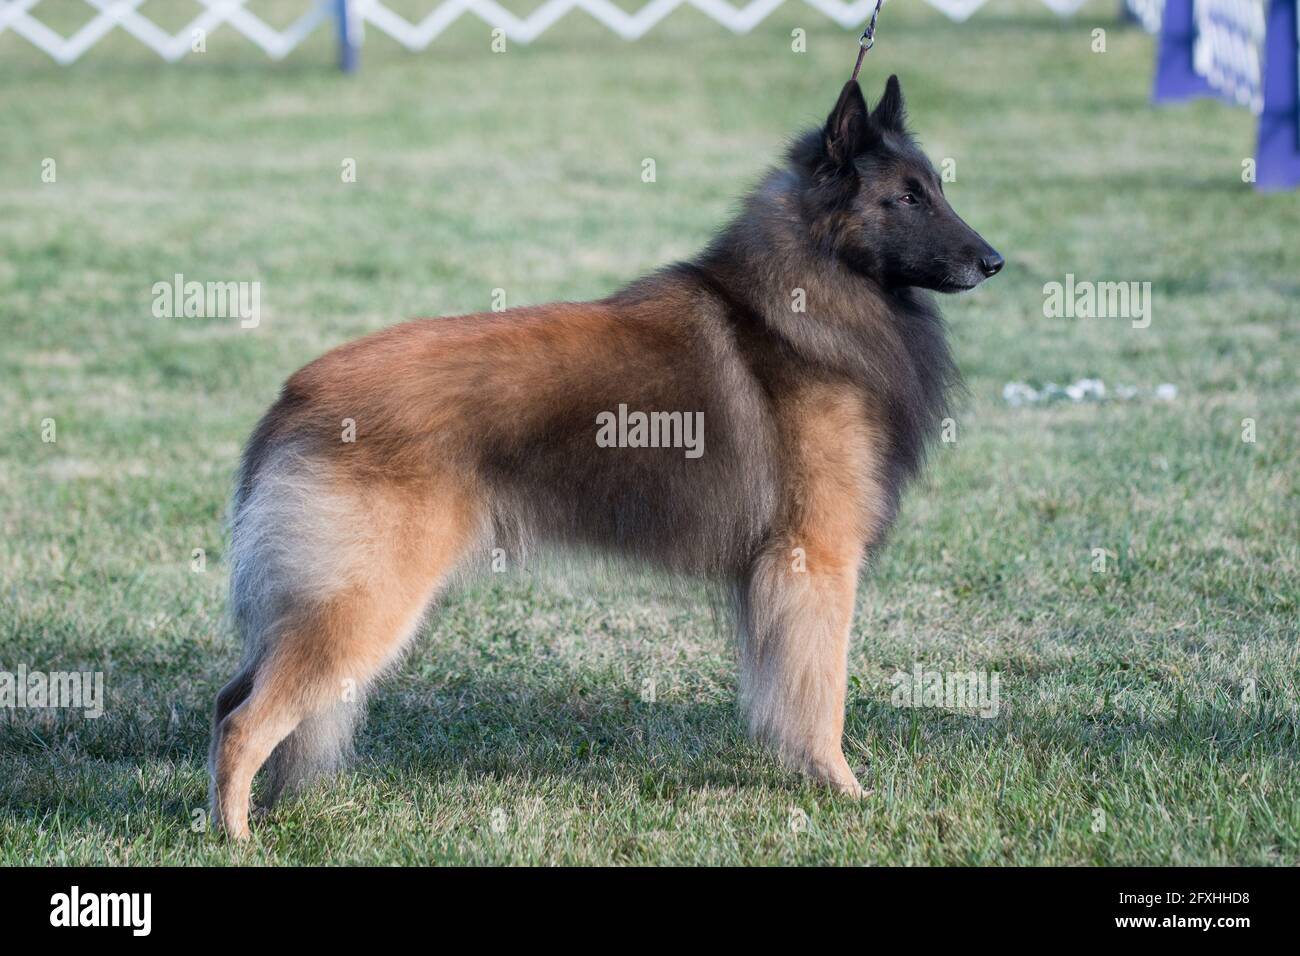 Belgian Tervuren standing at dog show Stock Photo